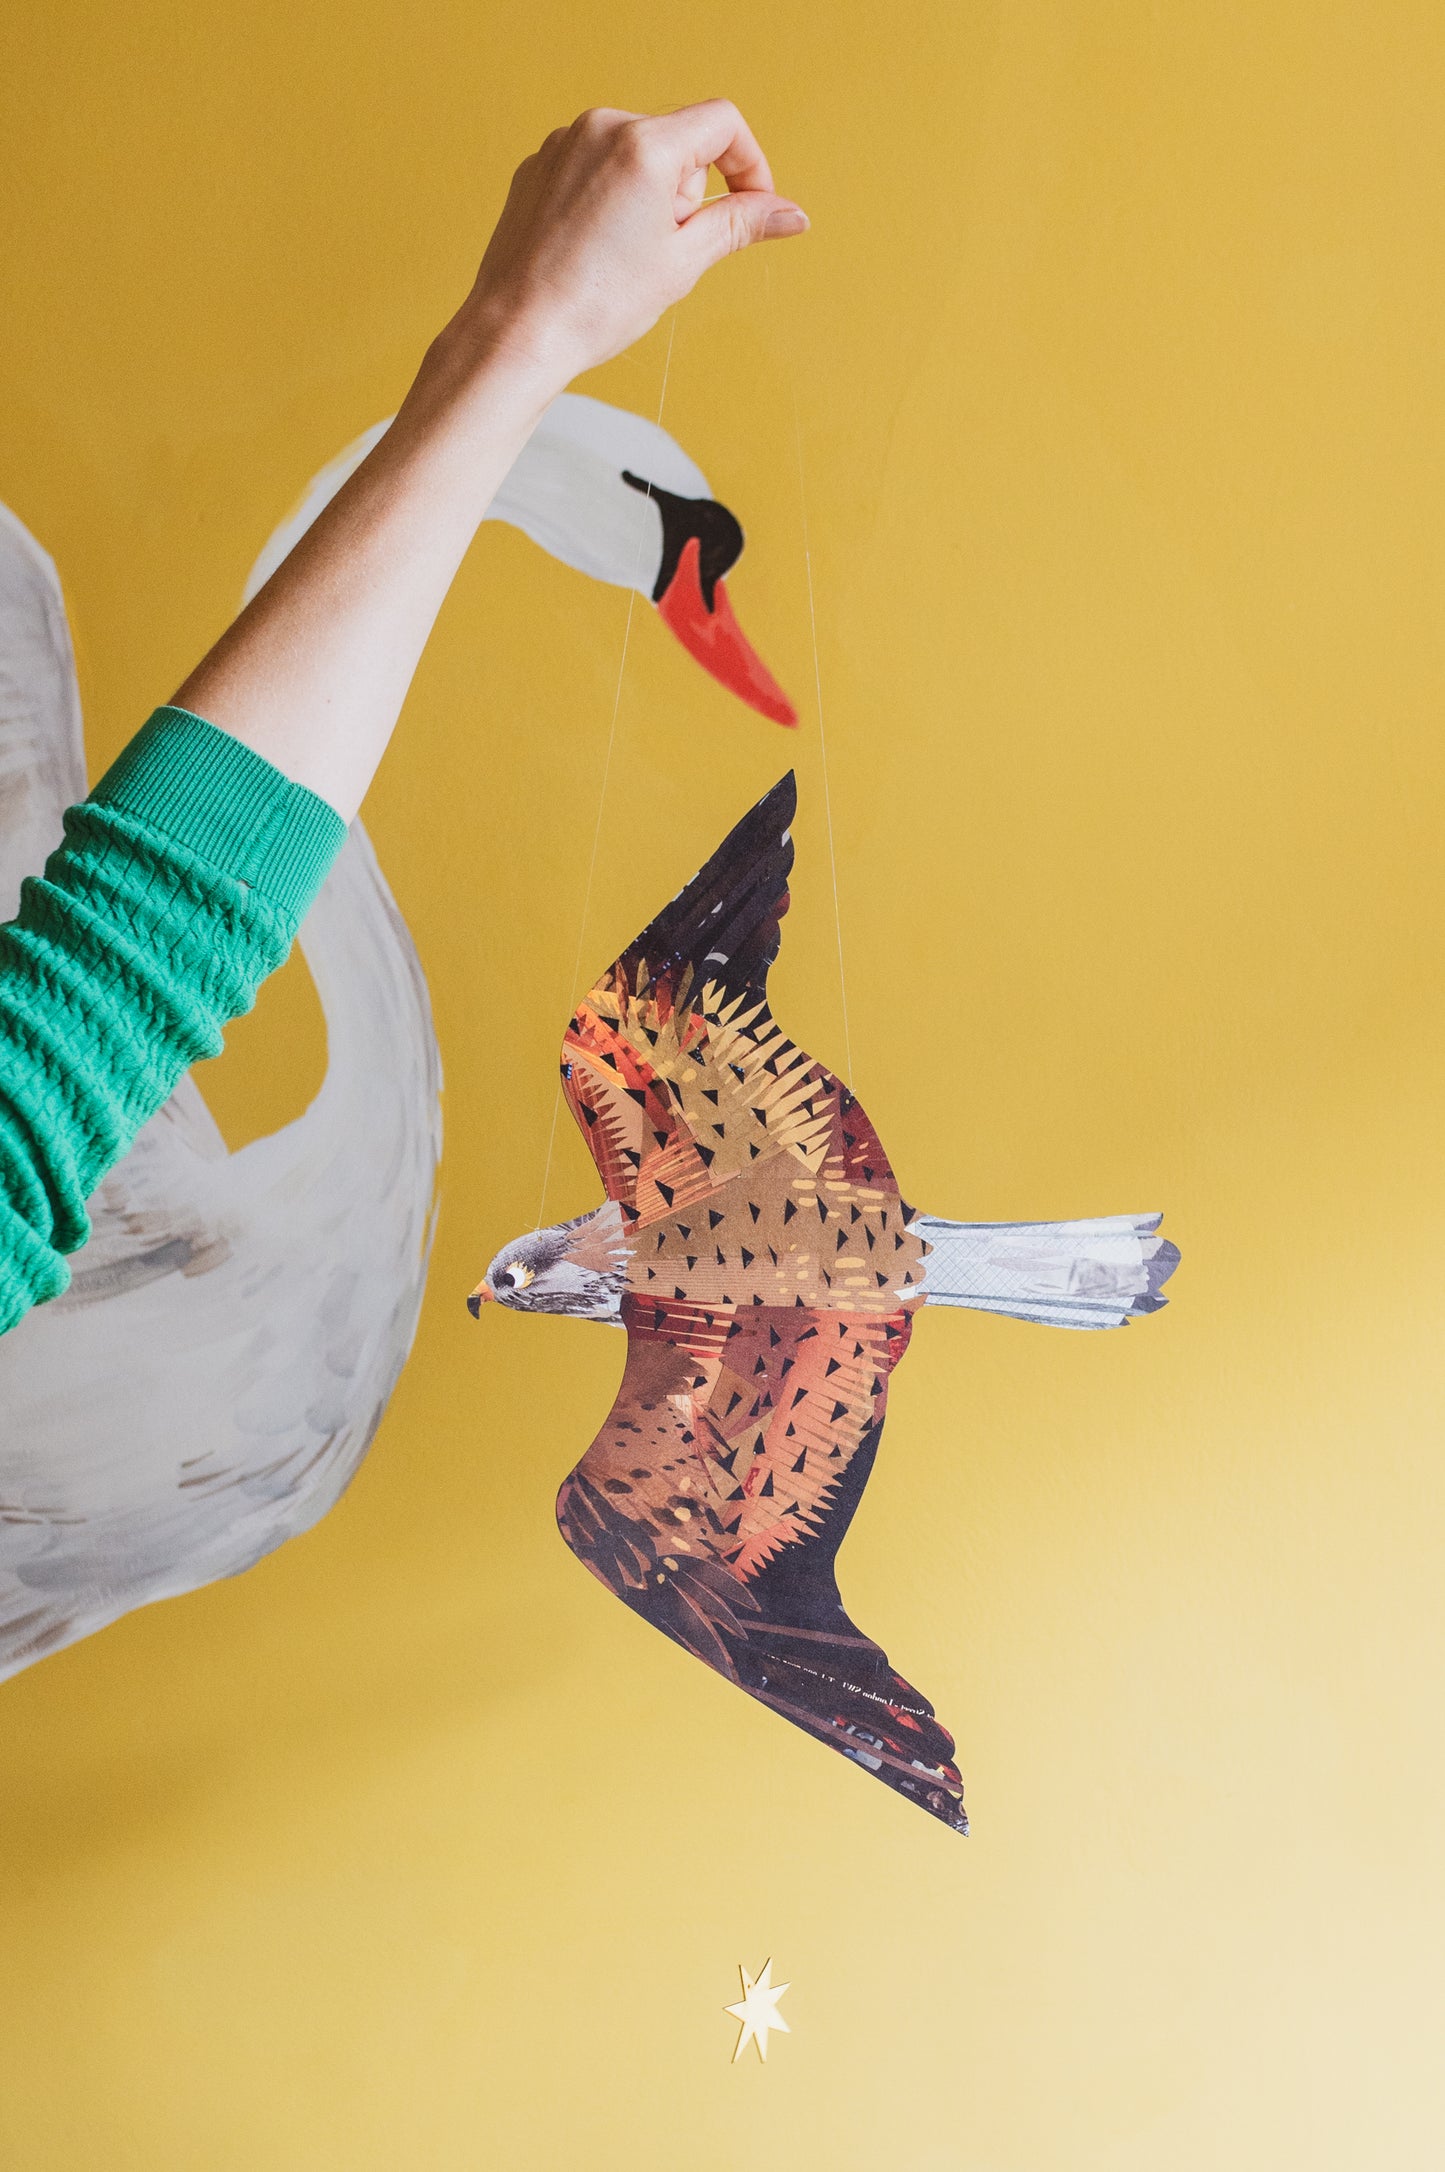 Kestrel Decorative Bird Art